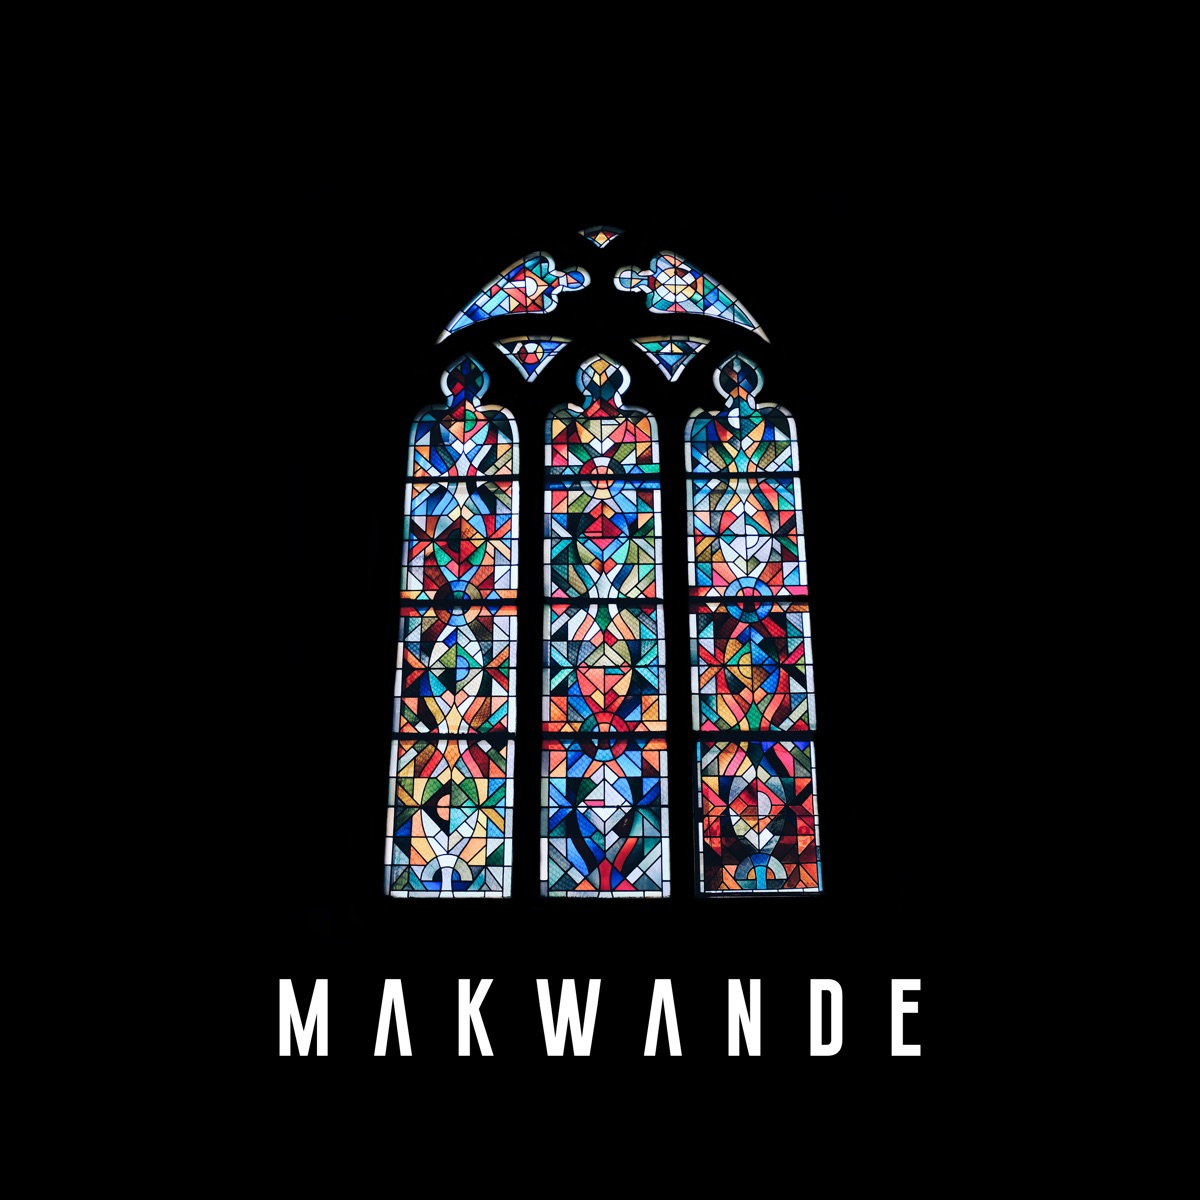 MP3: Makwa – Staring